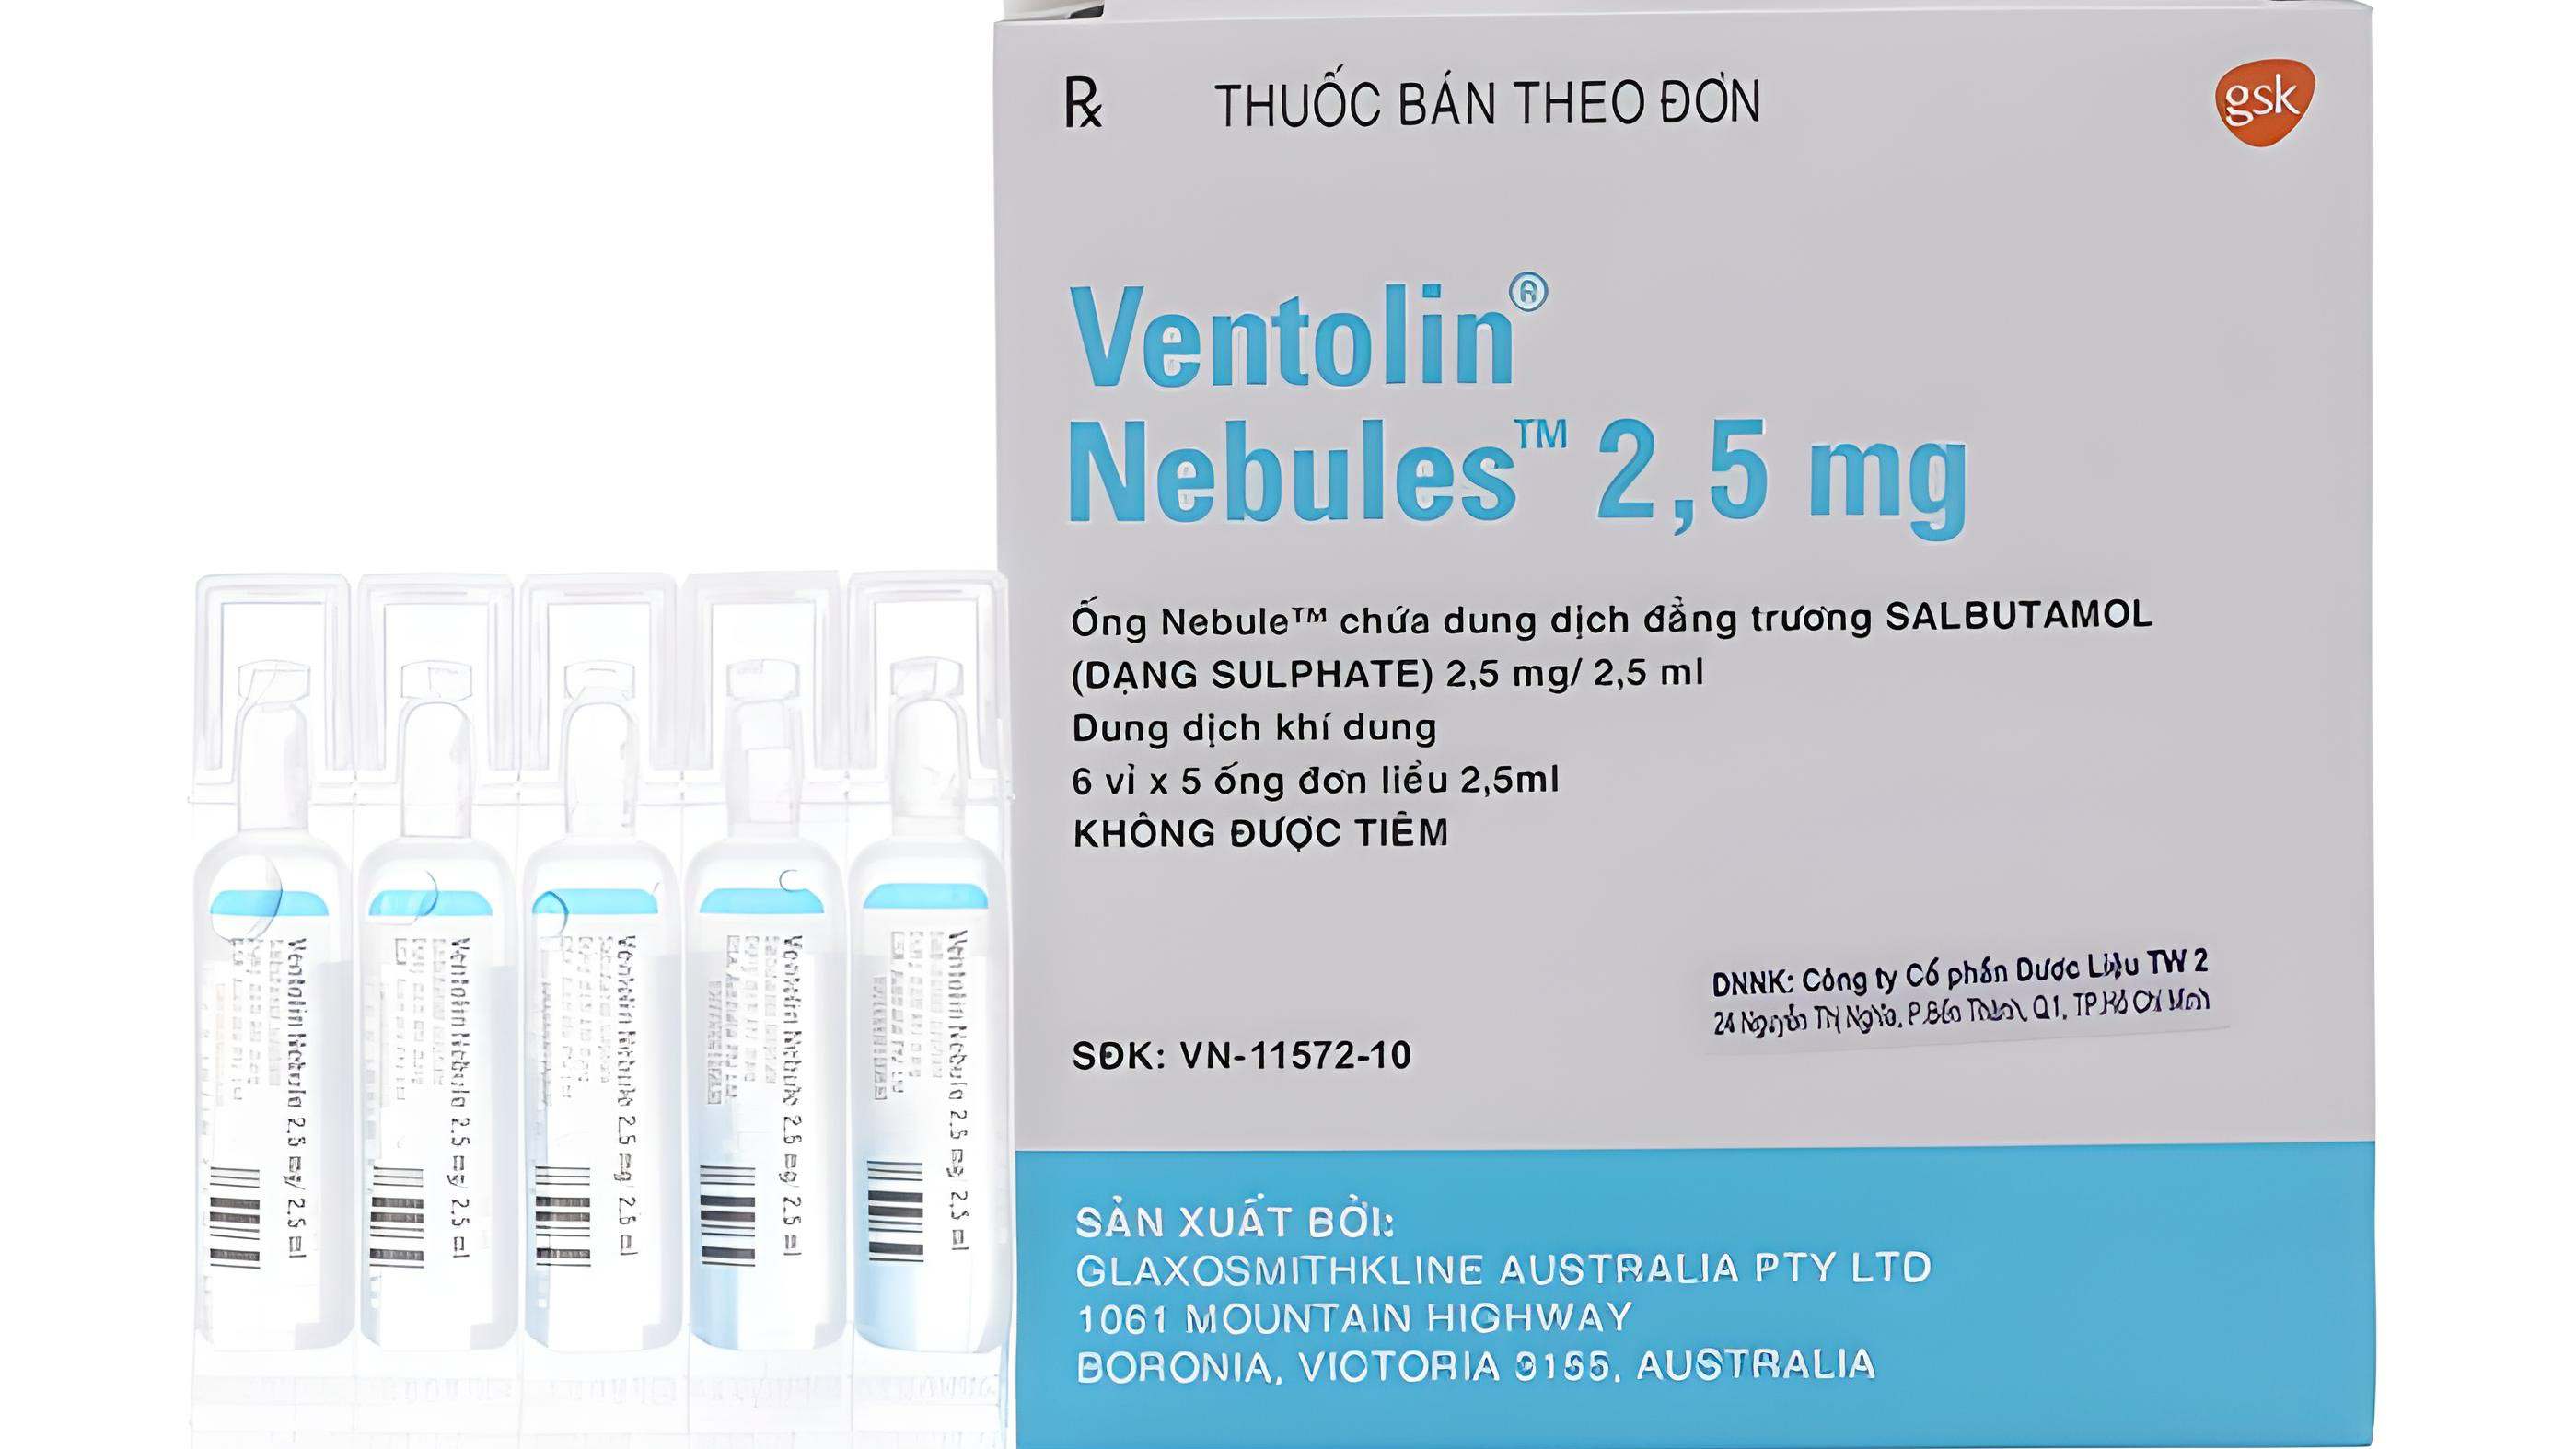 Cơ chế hoạt động của thuốc Ventolin Nebules là gì?
